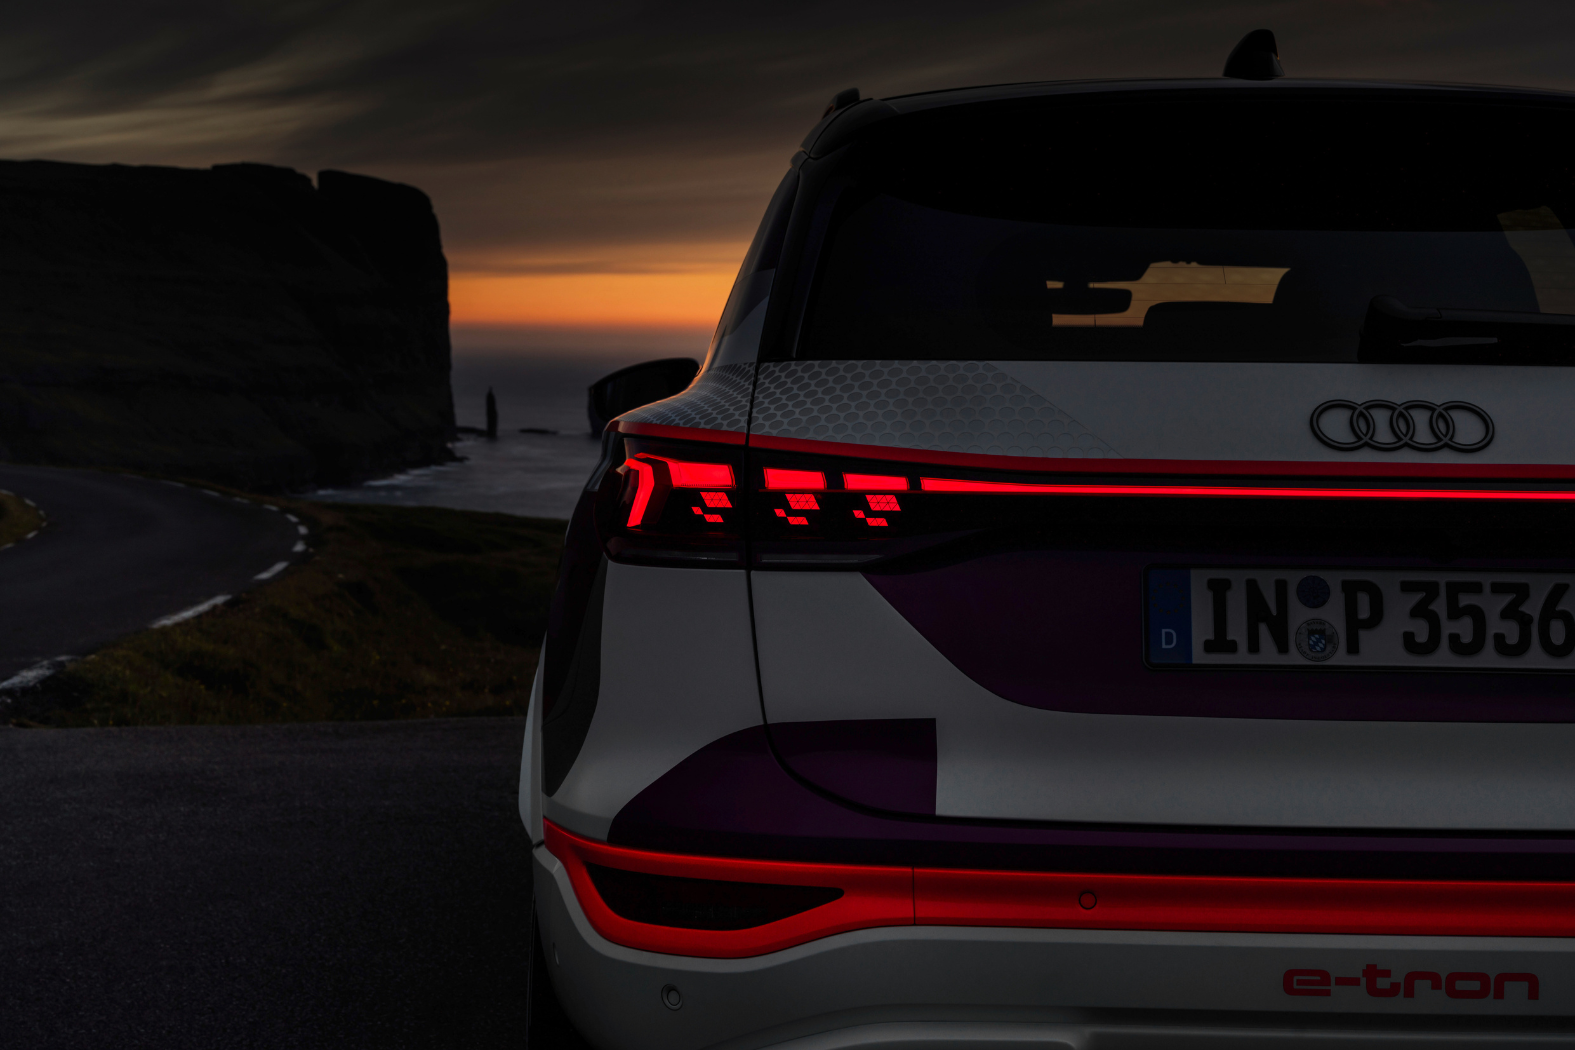 Audi’s next-gen digital OLED tech warns road users of hazards